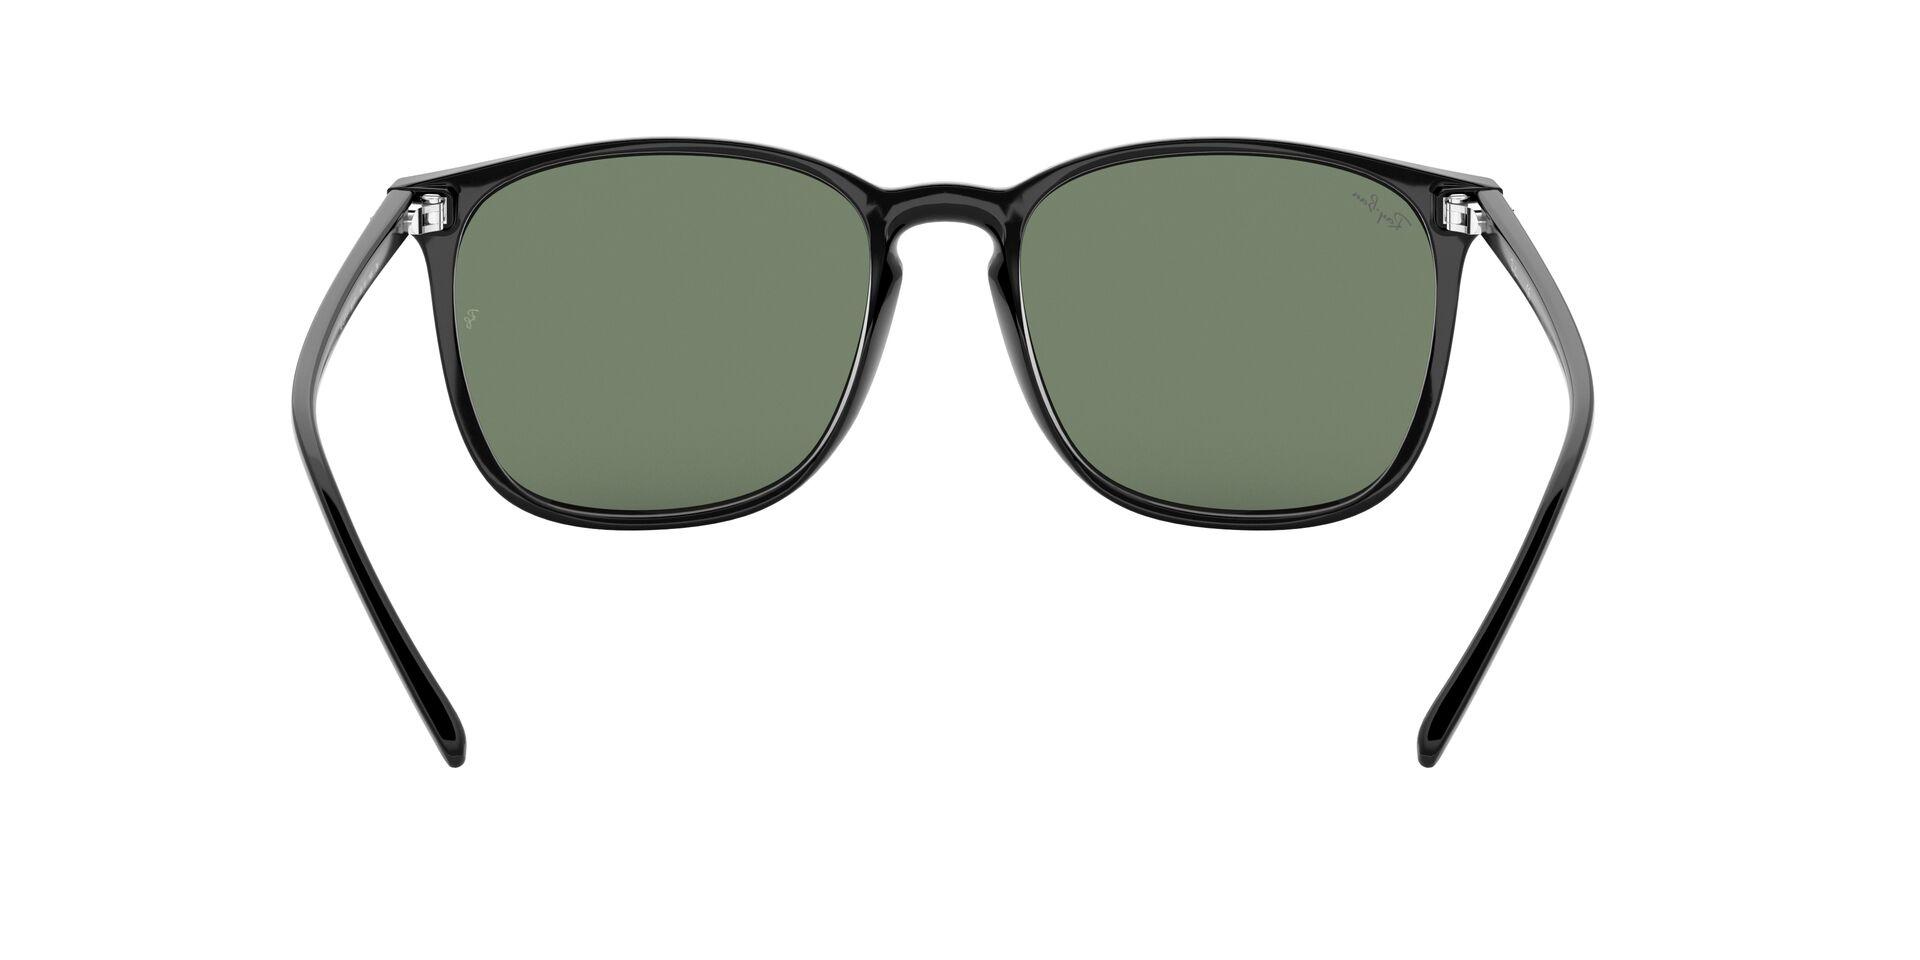 Mắt Kính Ray-Ban  - RB4387F 901/71 -Sunglasses